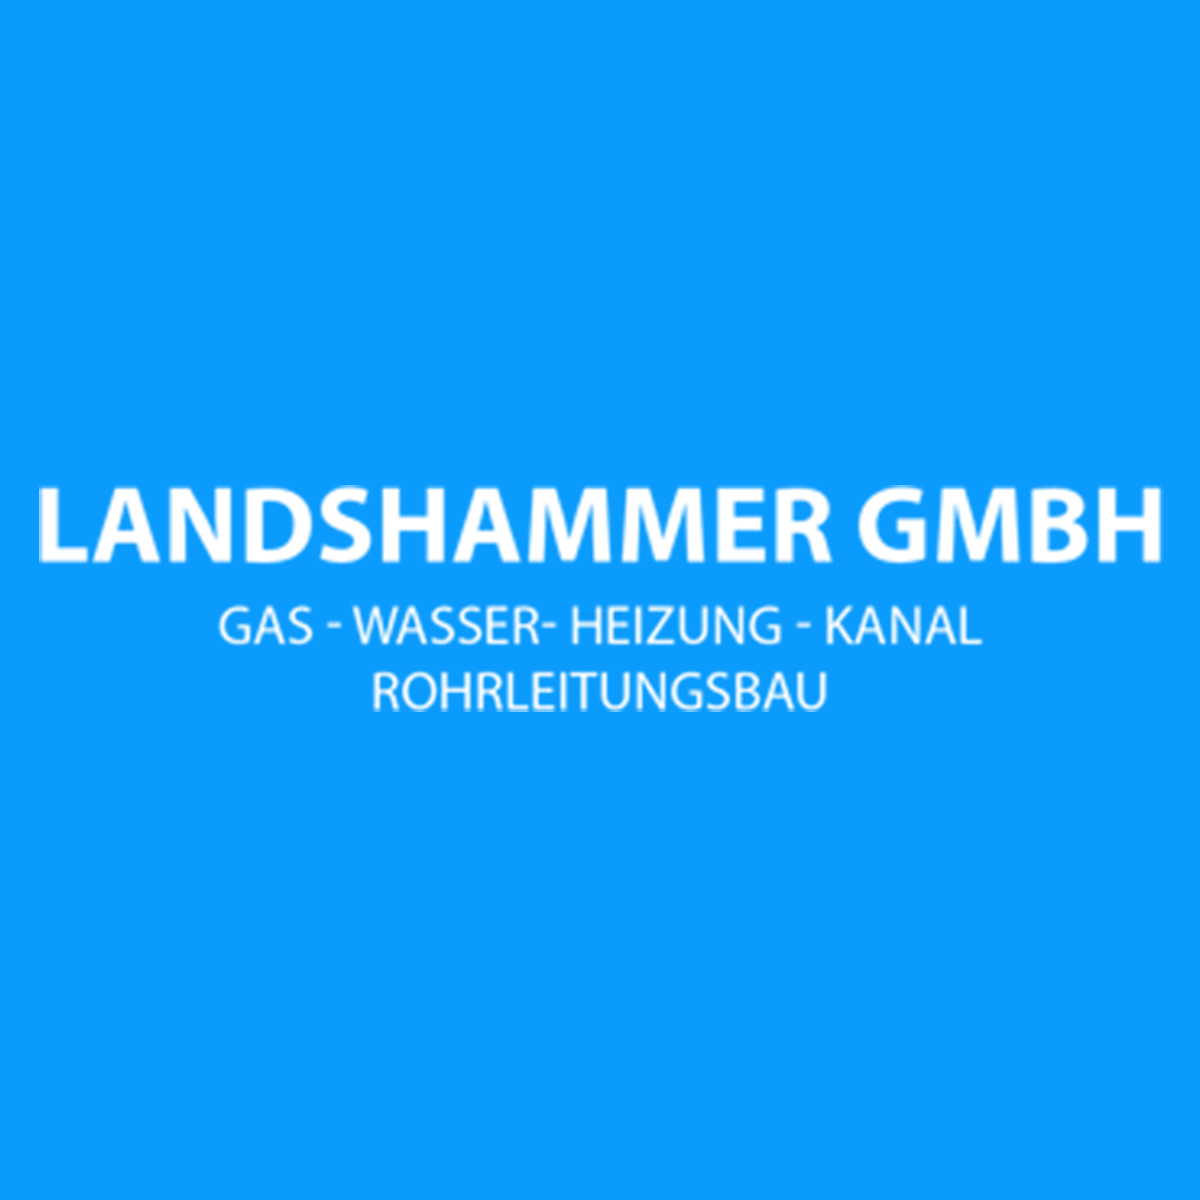 Landshammer GmbH Gas-Wasser-Heizung-Kanal Rohrleitungsbau Logo